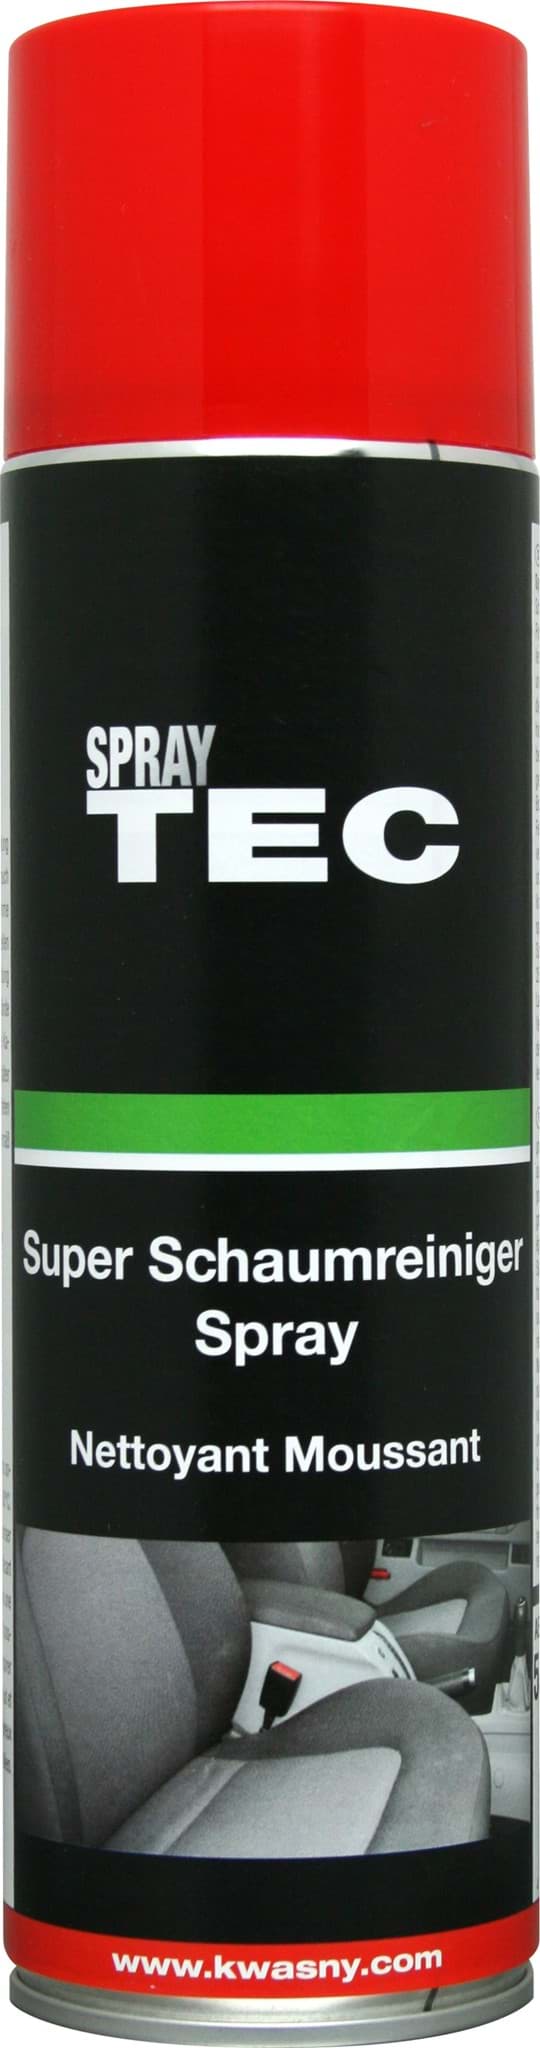 Afbeelding van Super Schaumreiniger Spray 500ml SprayTEC